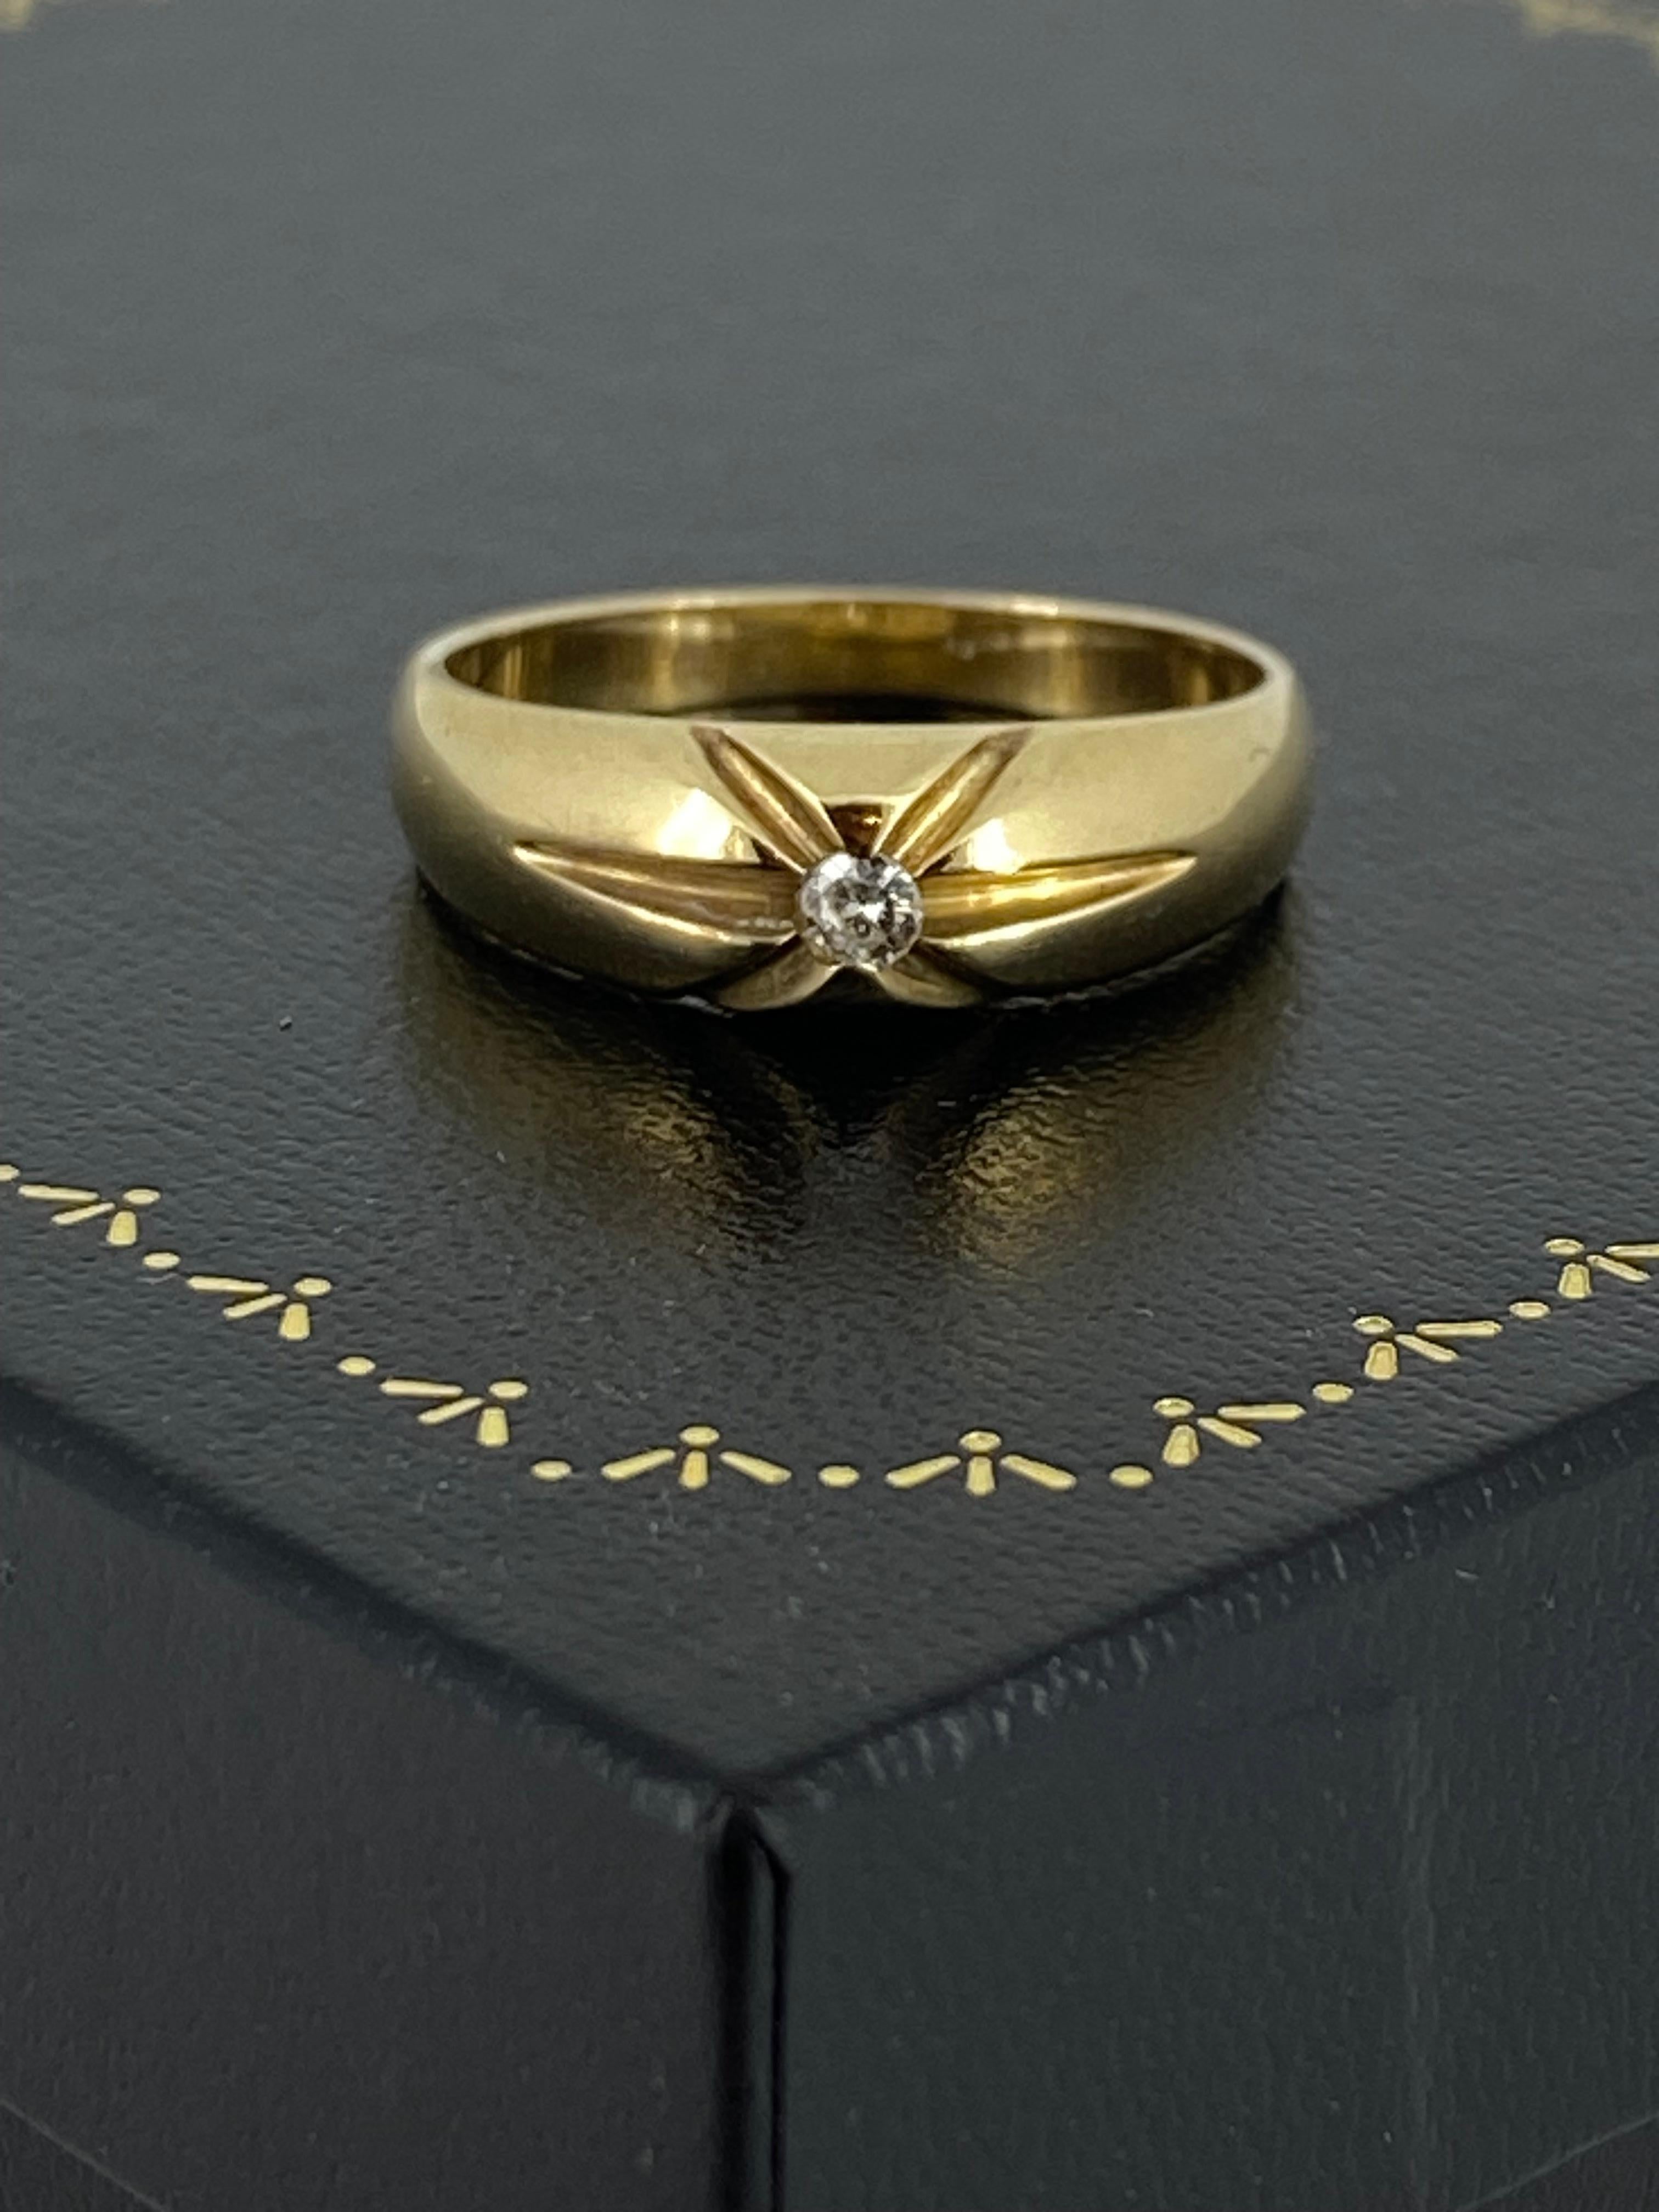 Elegamment sertie d'étincelants 
diamant rond taille brillant
d'une couleur et d'une clarté optimales (G-H/VS) 
de 0,10ct environ. 
ce bracelet pour homme fait à la main est
en or jaune 9K, 
avec un motif croisé complexe 

~~~

La tige arrondie